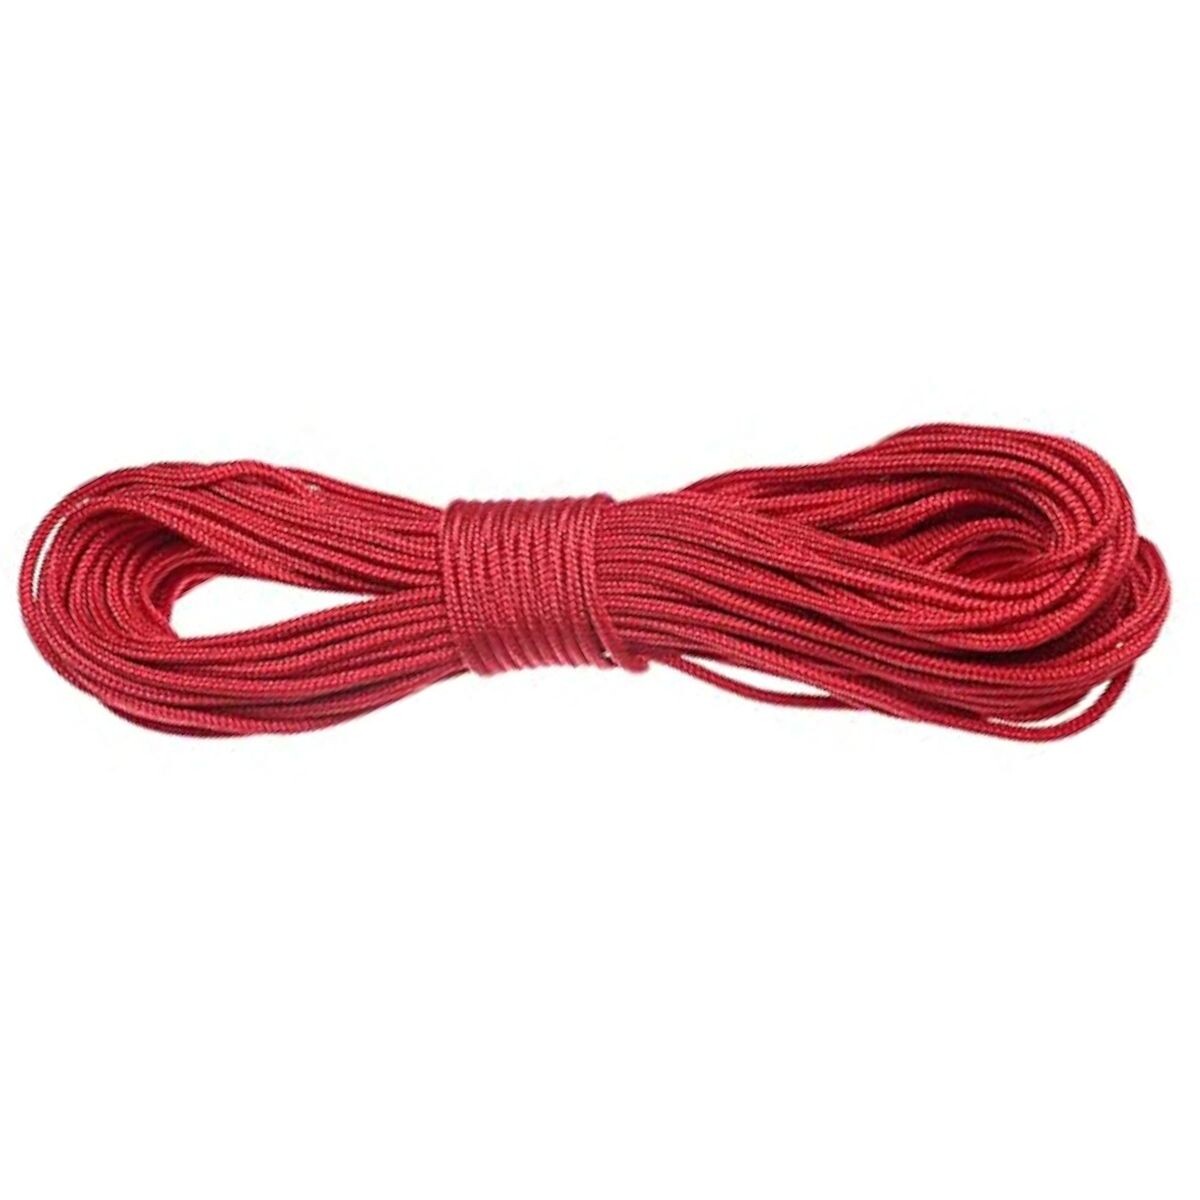 Cuerda paracord 50 metros - Rojo 